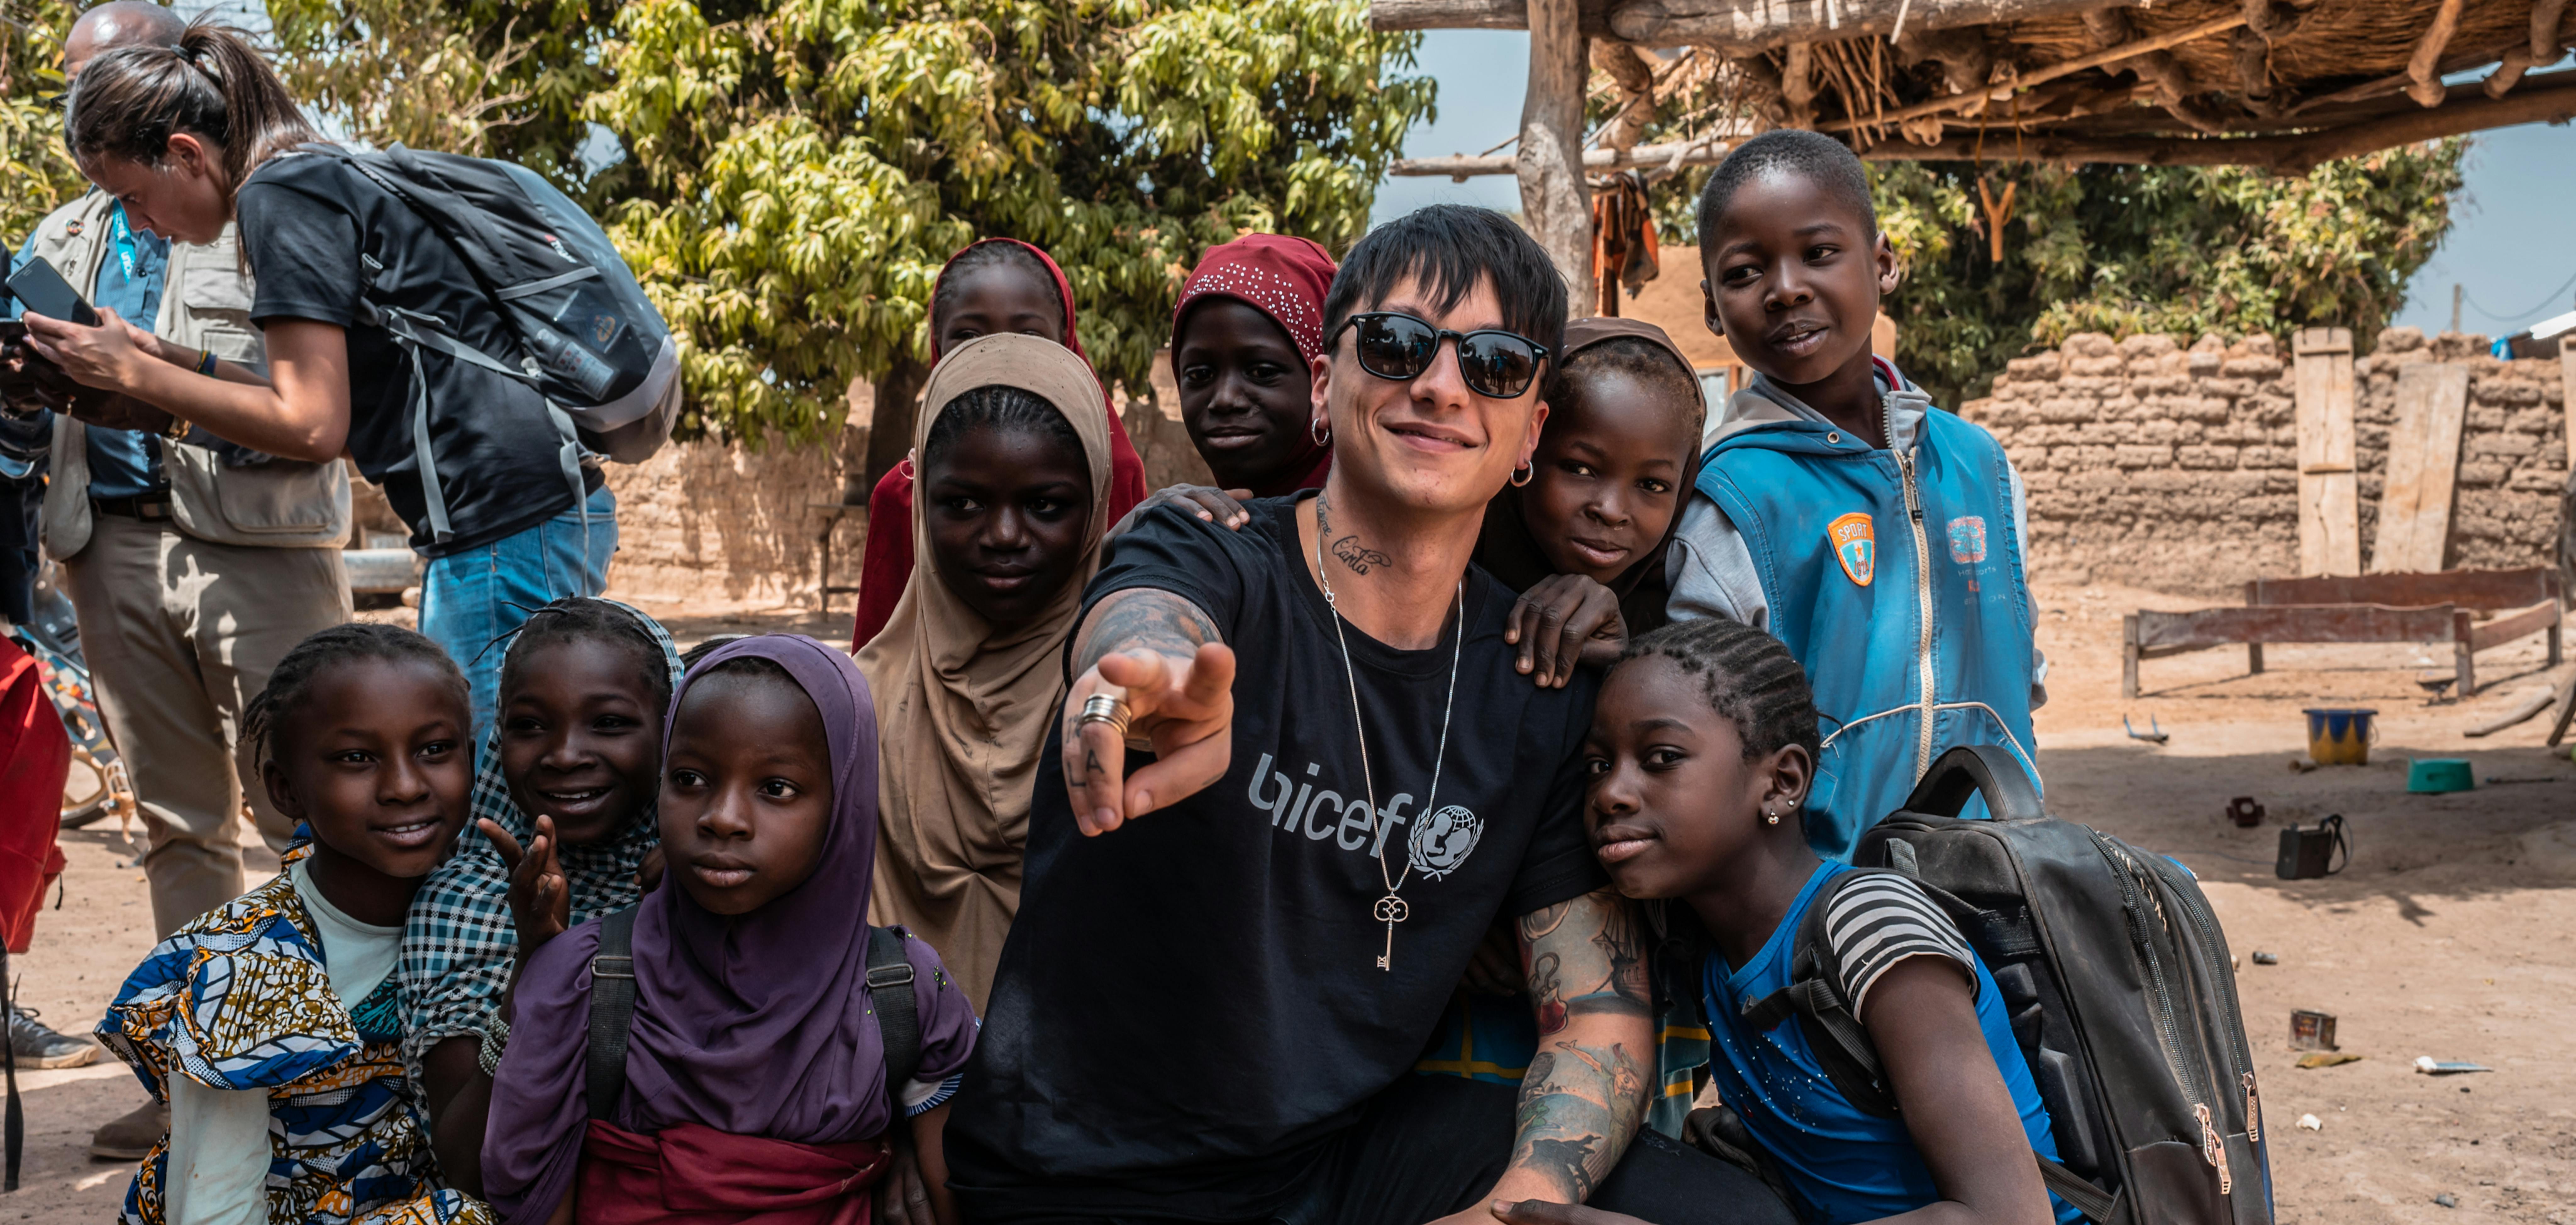 ULTIMO nel suo viaggio sul campo con UNICEF in Mali